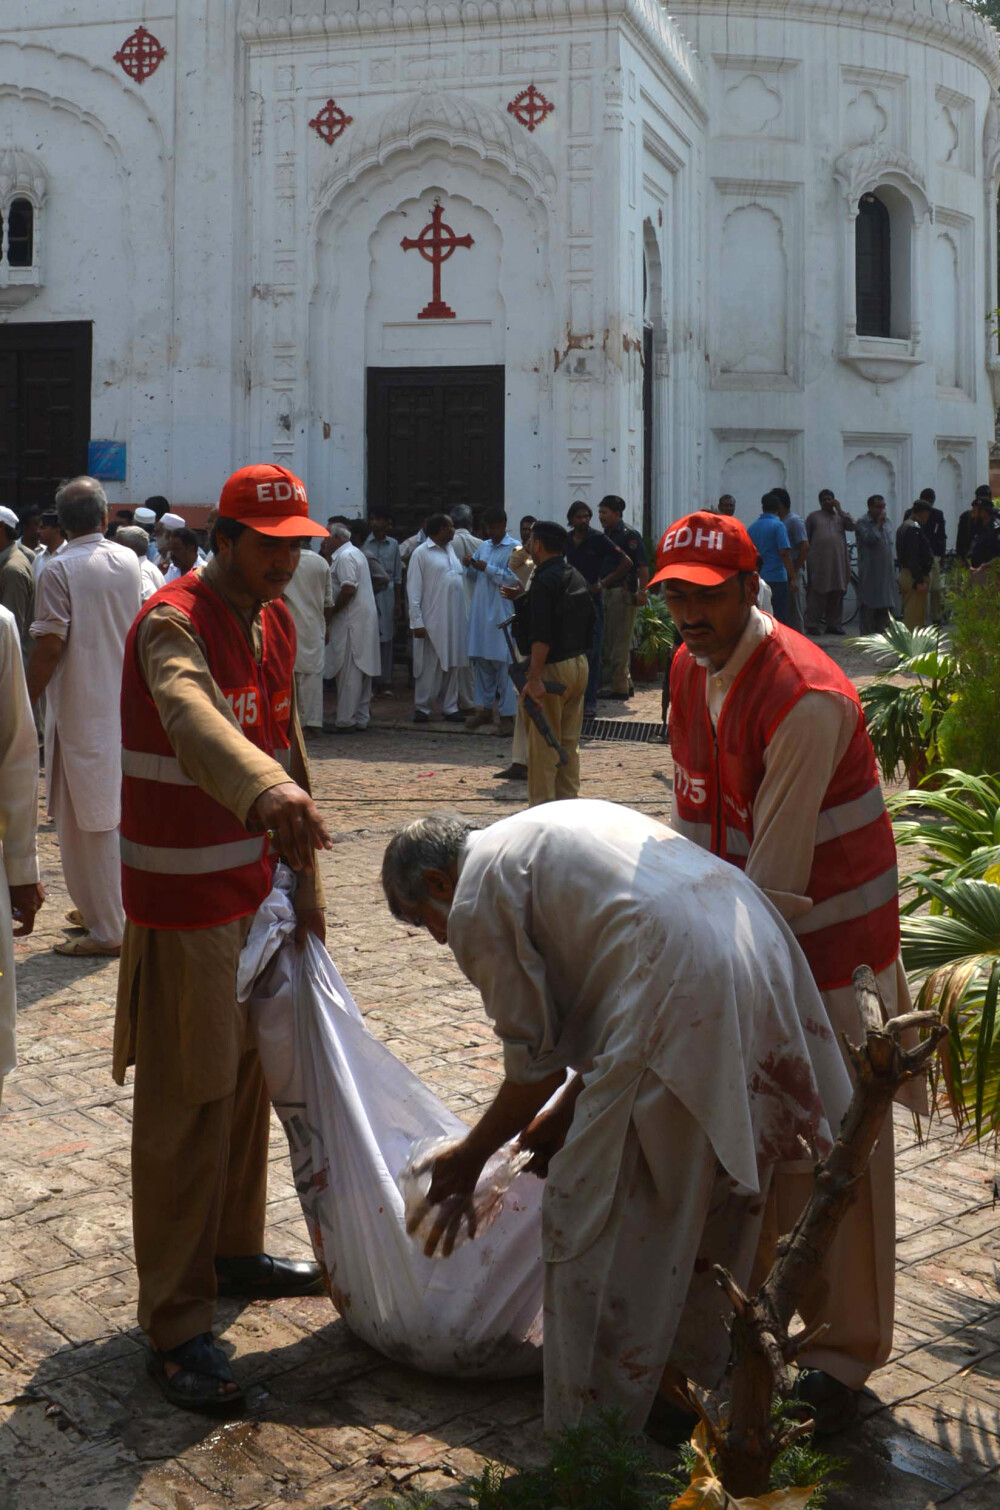 55 de morti,printre care femei si copii,dupa un atac sinucigas cu bomba intr-o biserica din Pakistan - Imaginea 2